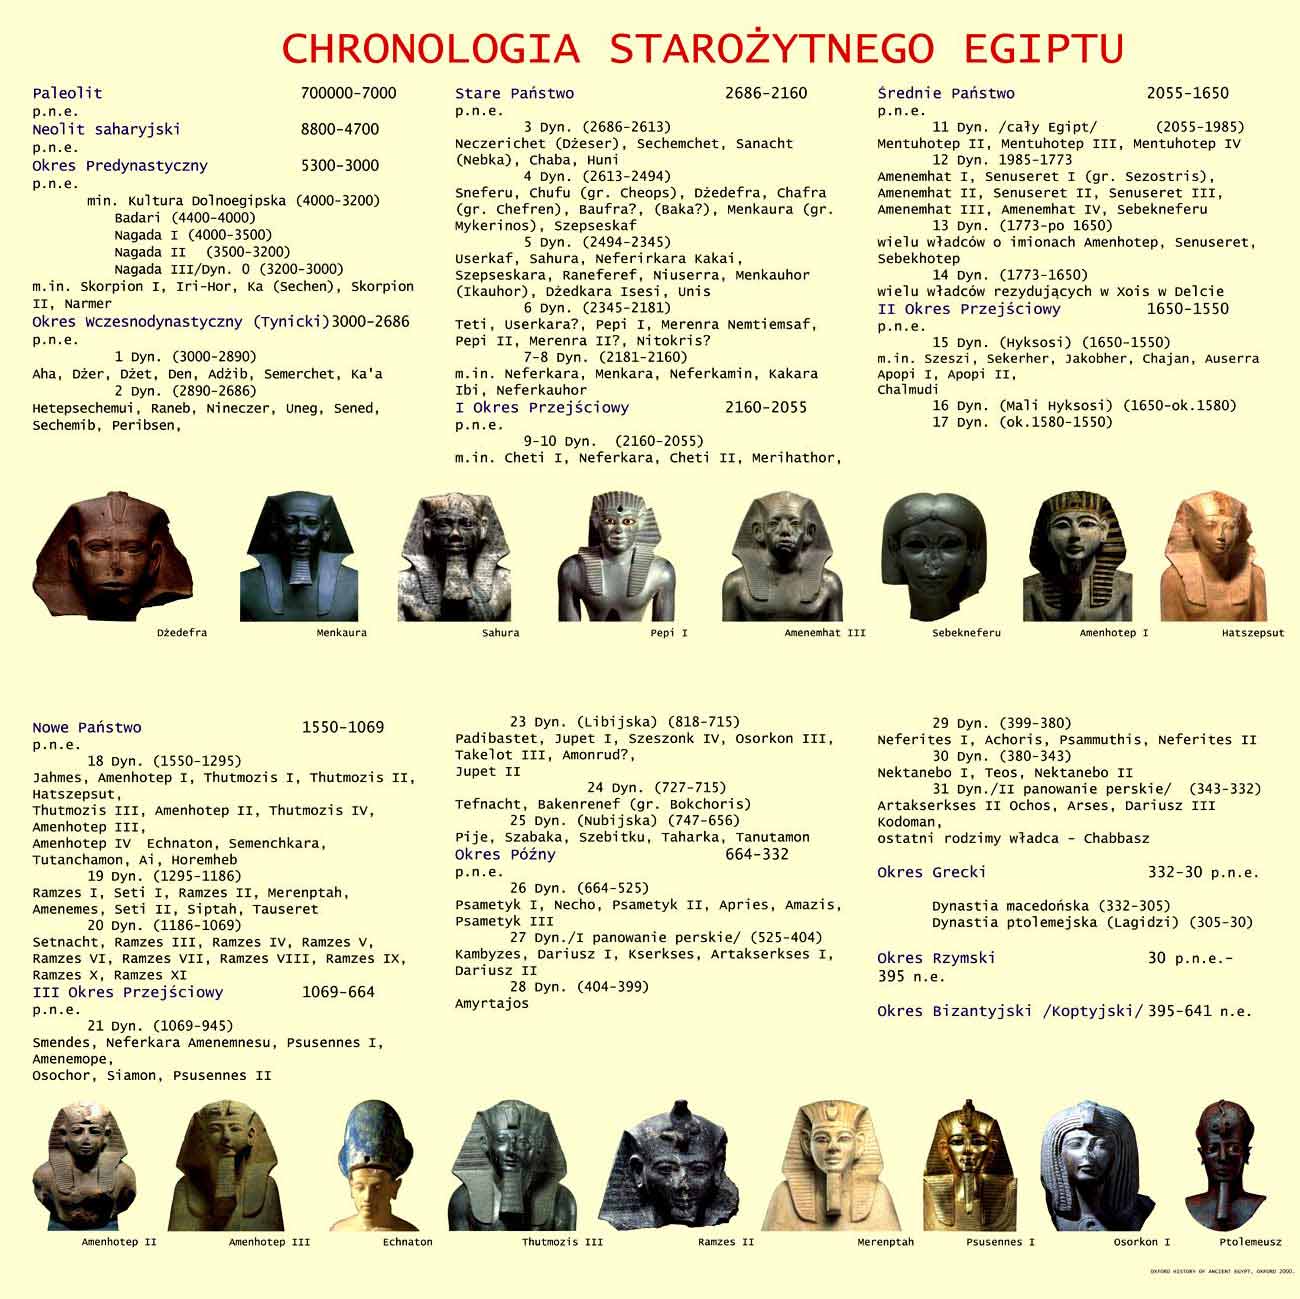 mier i ycie w staroytnym Egipcie - Chronologia staroytnego Egiptu - plansza